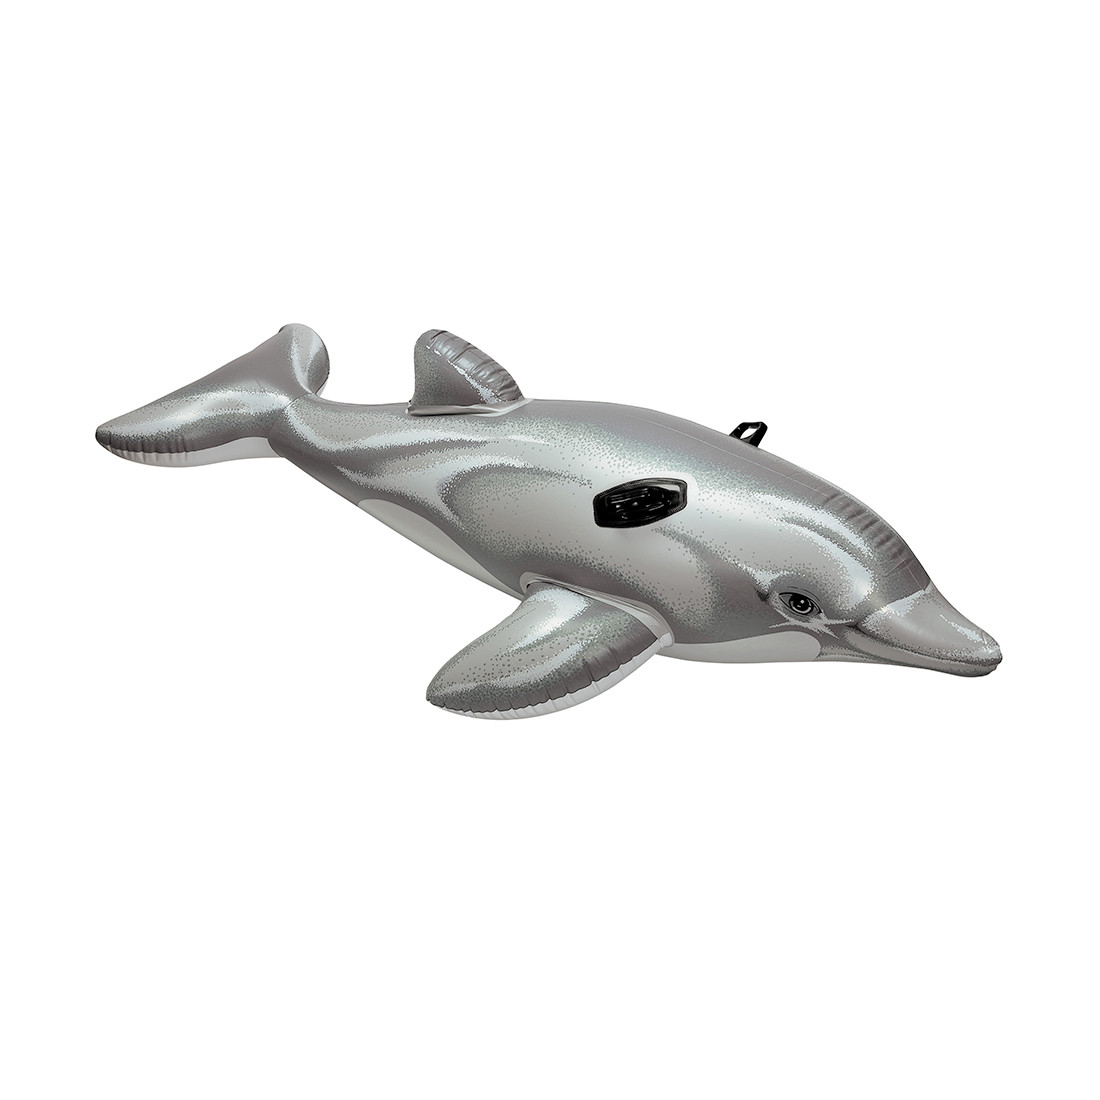 Надувная игрушка для катания верхом INTEX Дельфинчик 58535NP (175х66см, Винил, Gray)